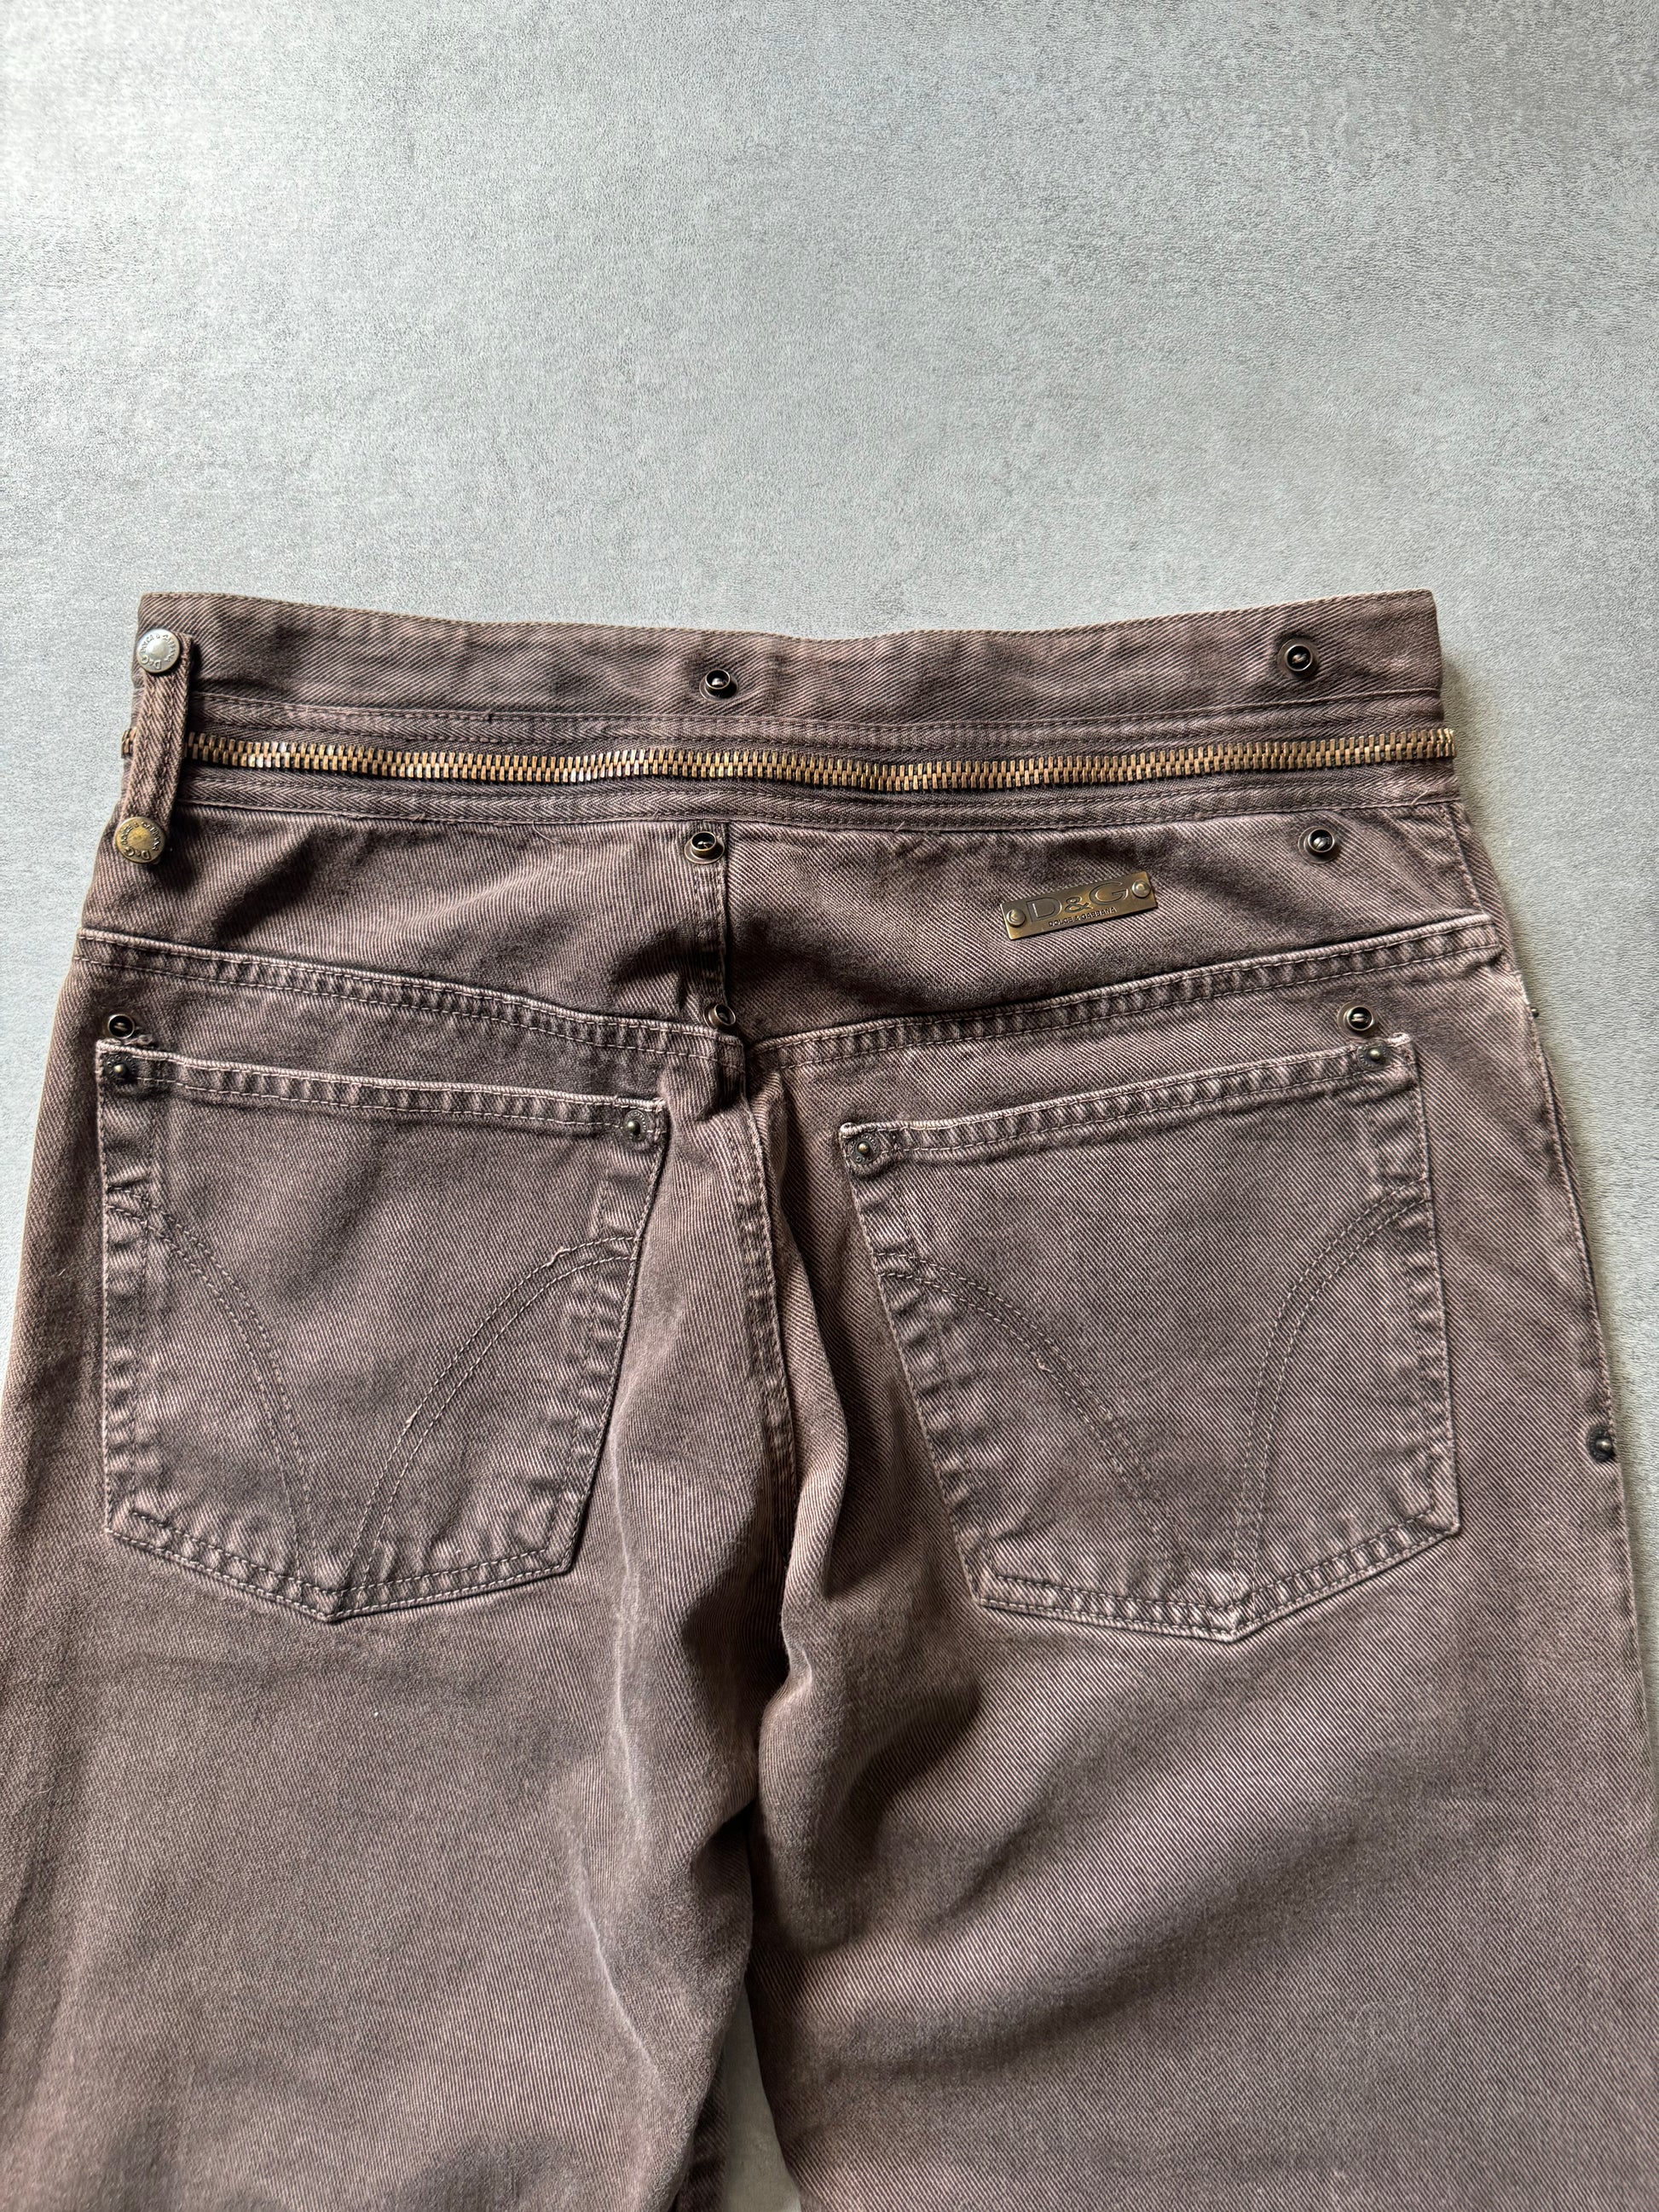 AW2003 Dolce & Gabbana Brown Zipped Pants (M) - 7